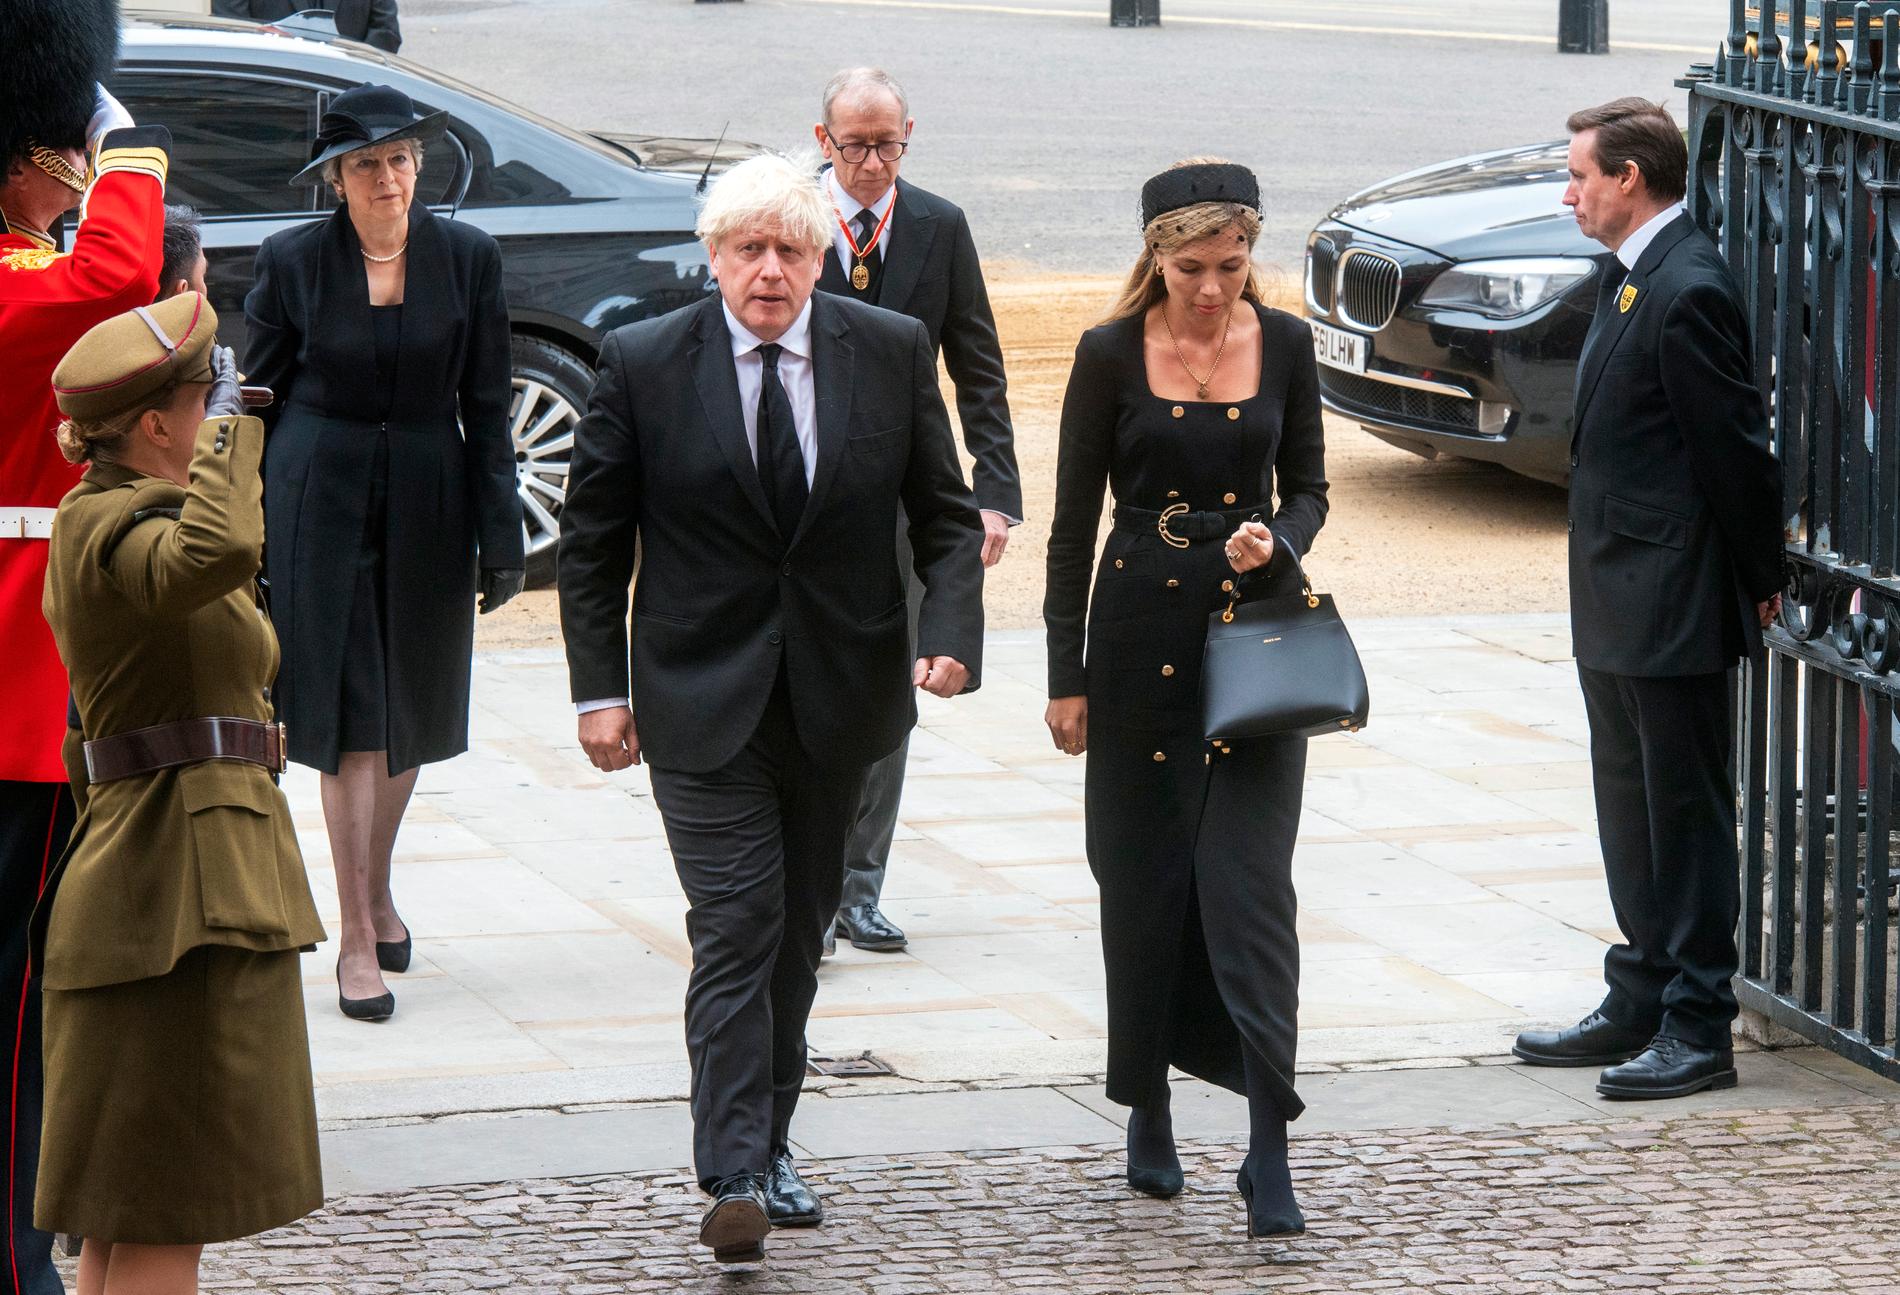 Förre premiärministern Boris Johnson kom tillsammans med hustrun Carrie Johnson. 